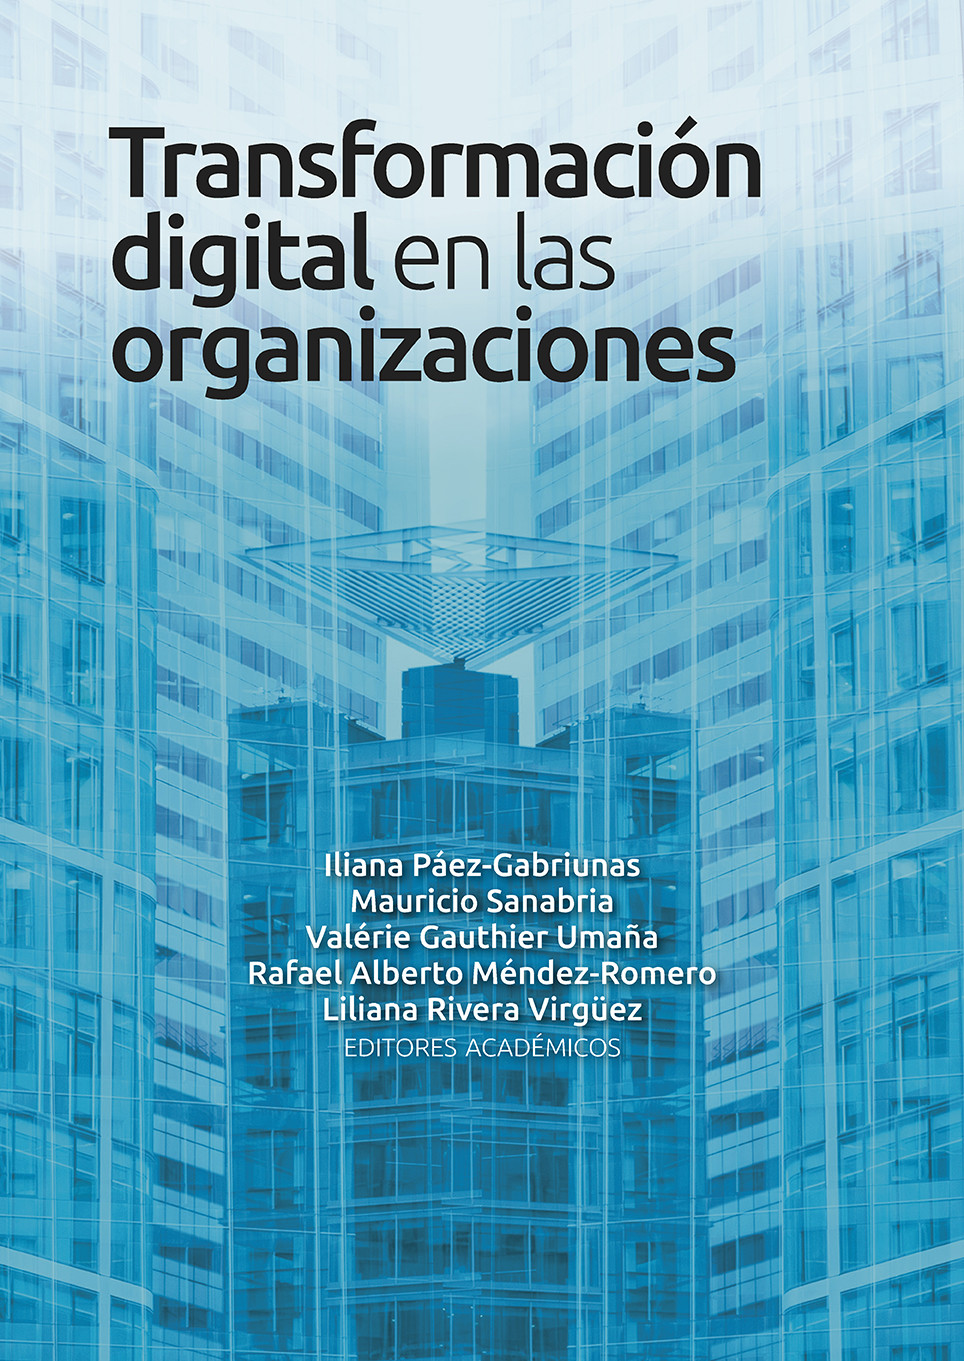 Imagen de portada del libro Transformación digital en las organizaciones